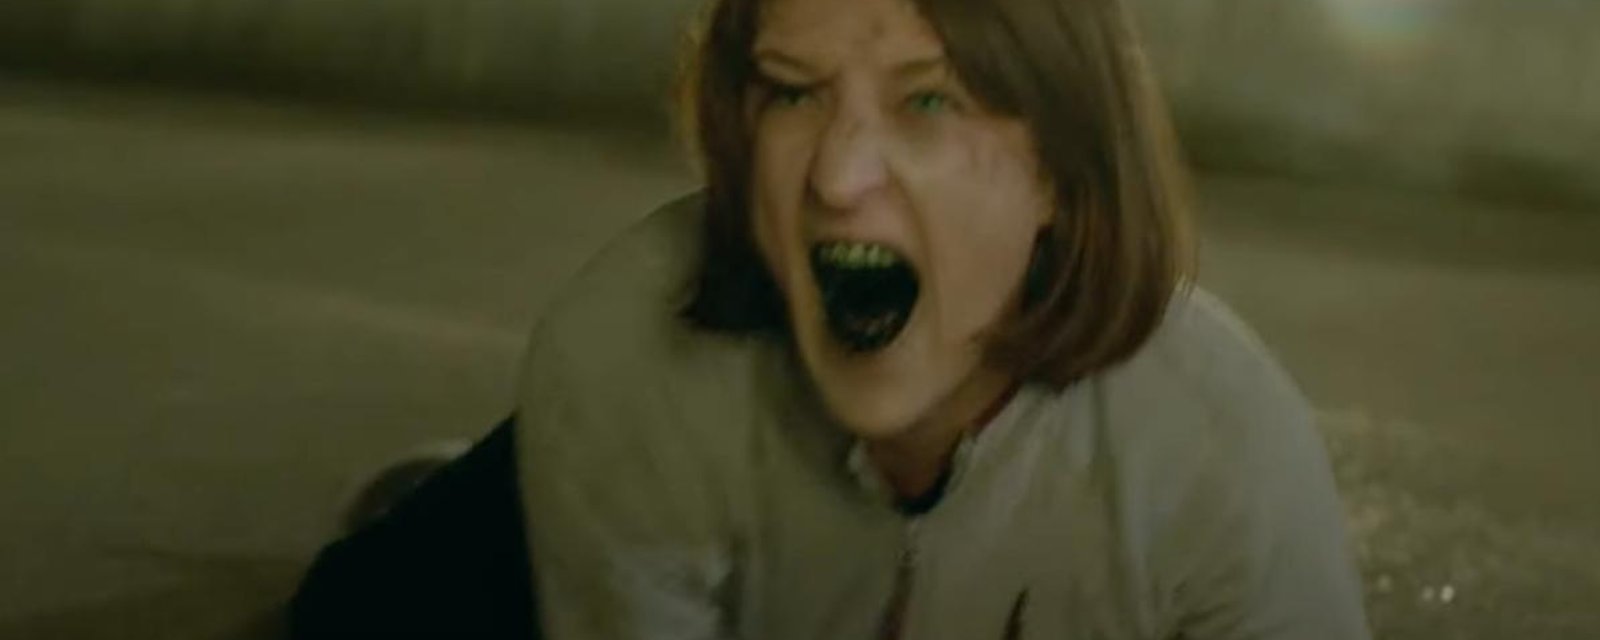 La bande-annonce du films québécois de zombies enfin dévoilée